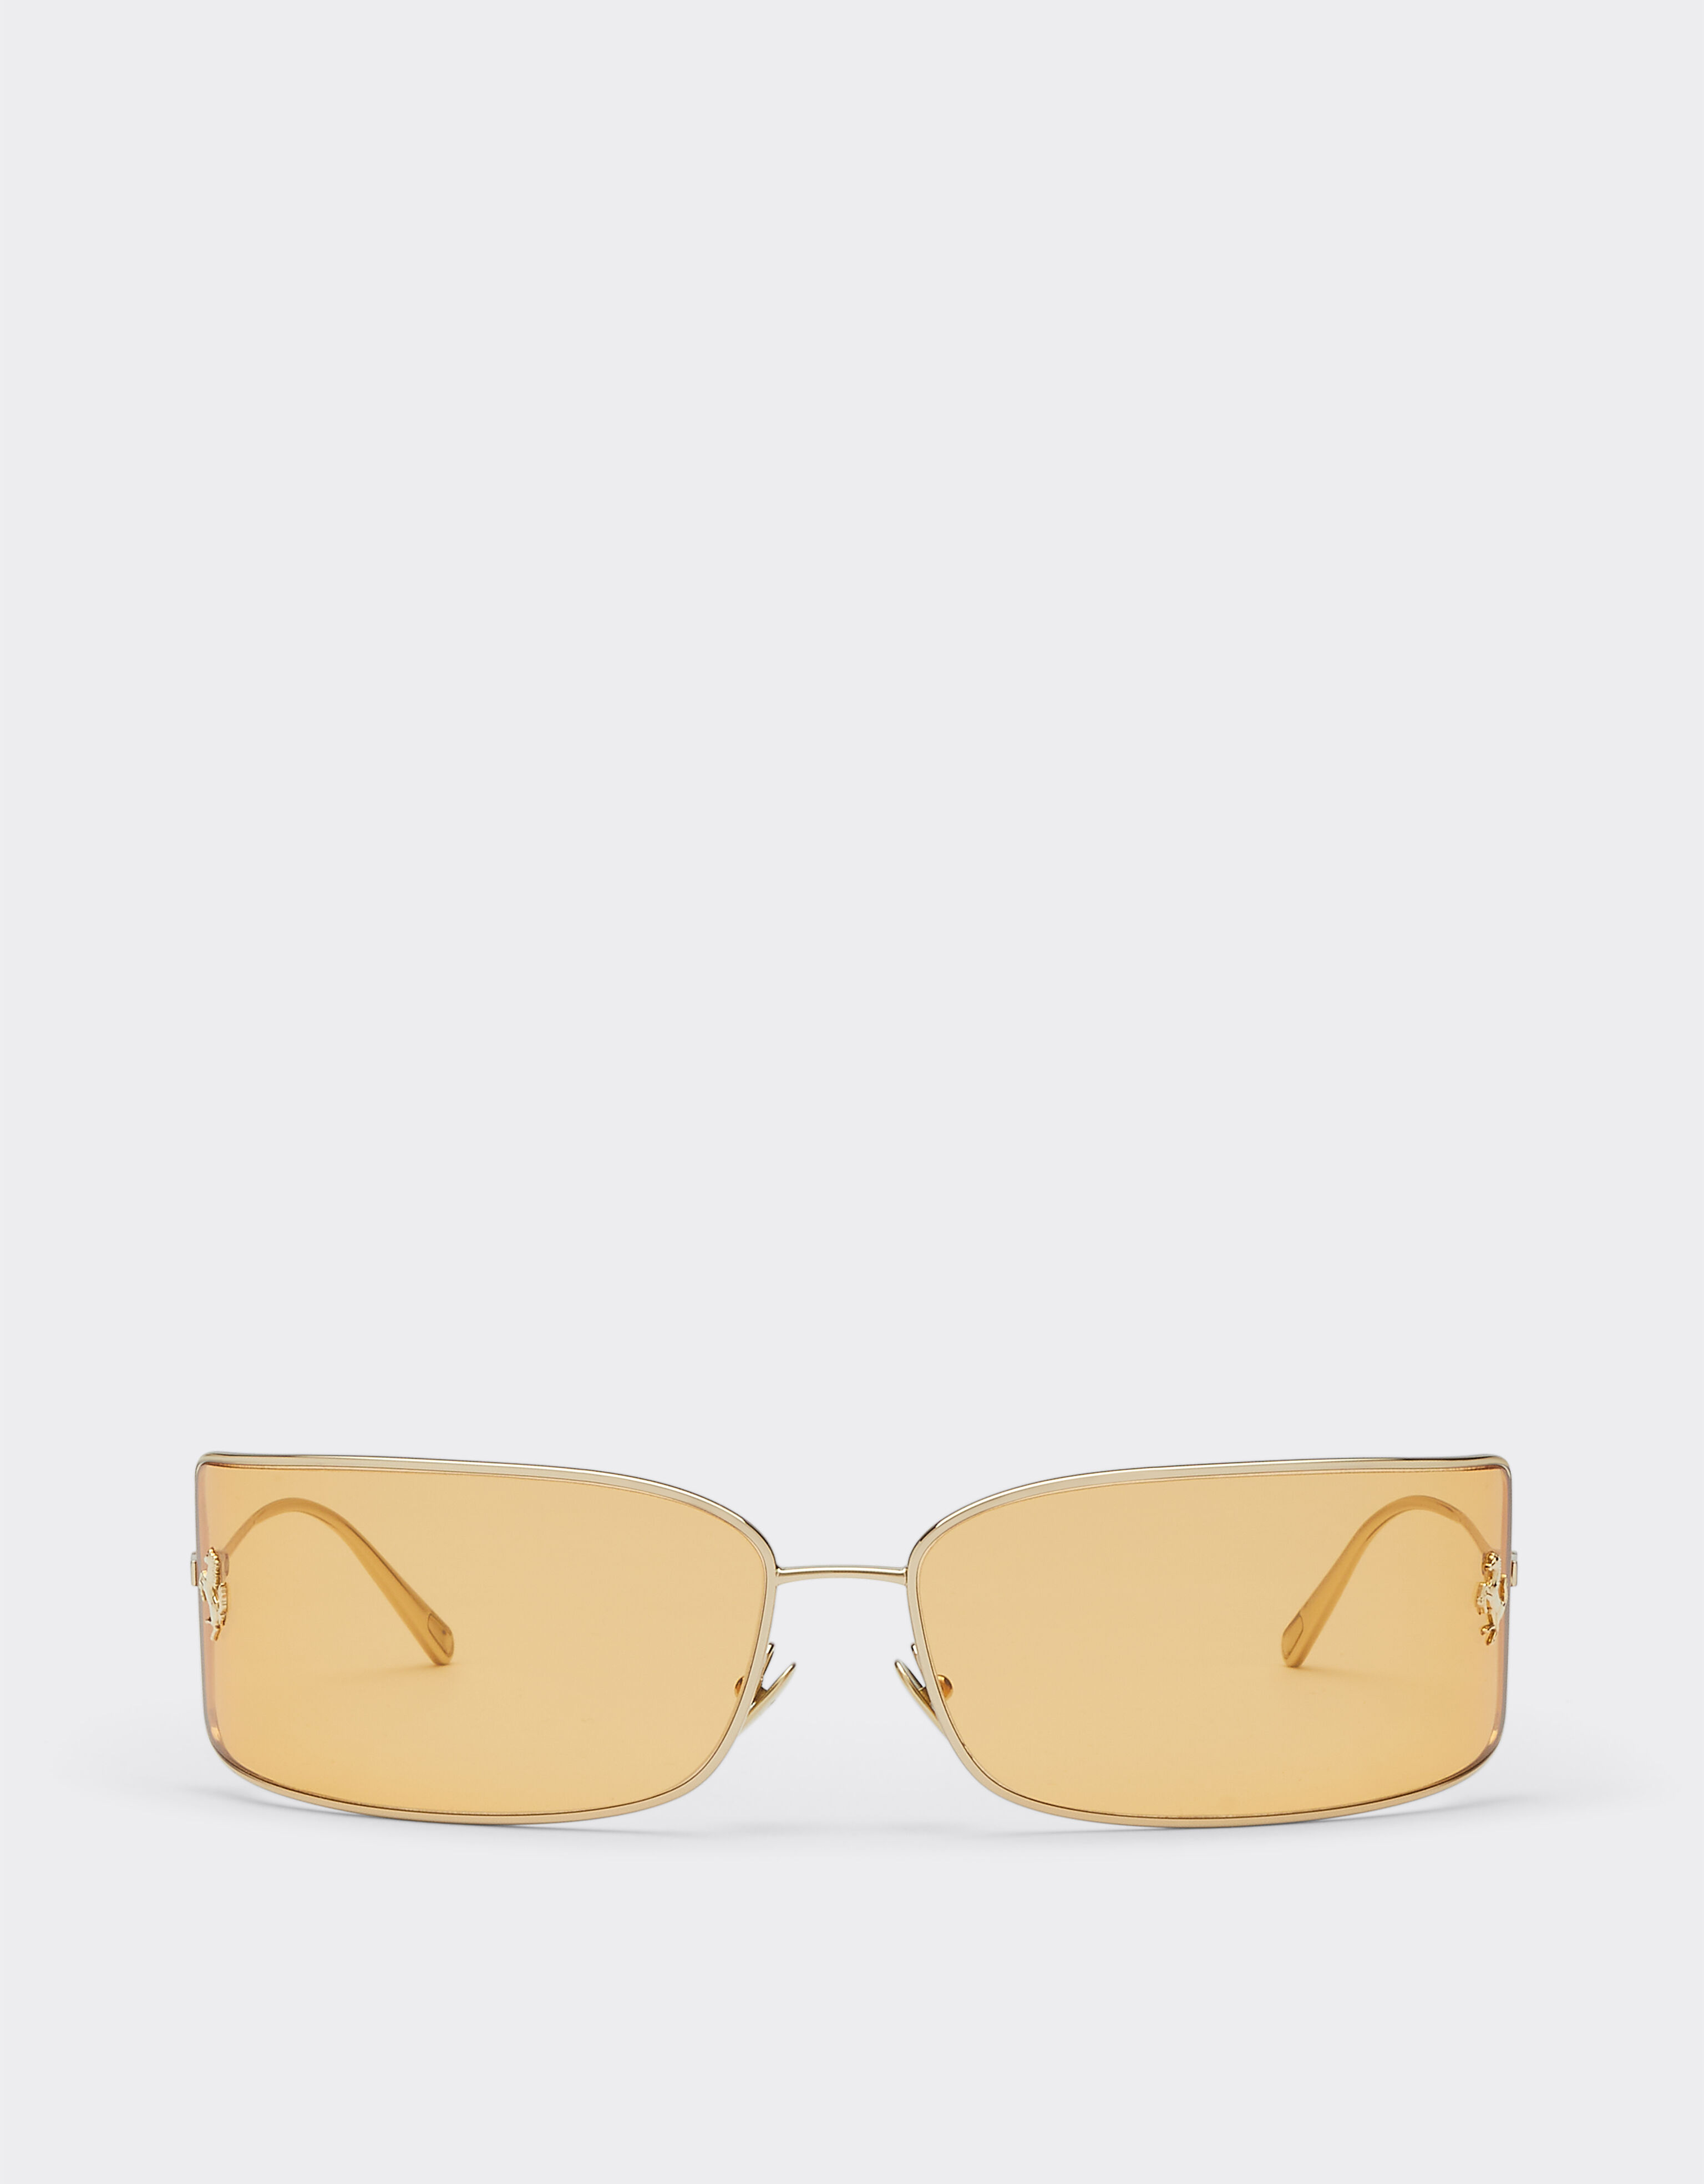 Ferrari Ferrari shield sunglasses with gold lenses Black Matt F1251f